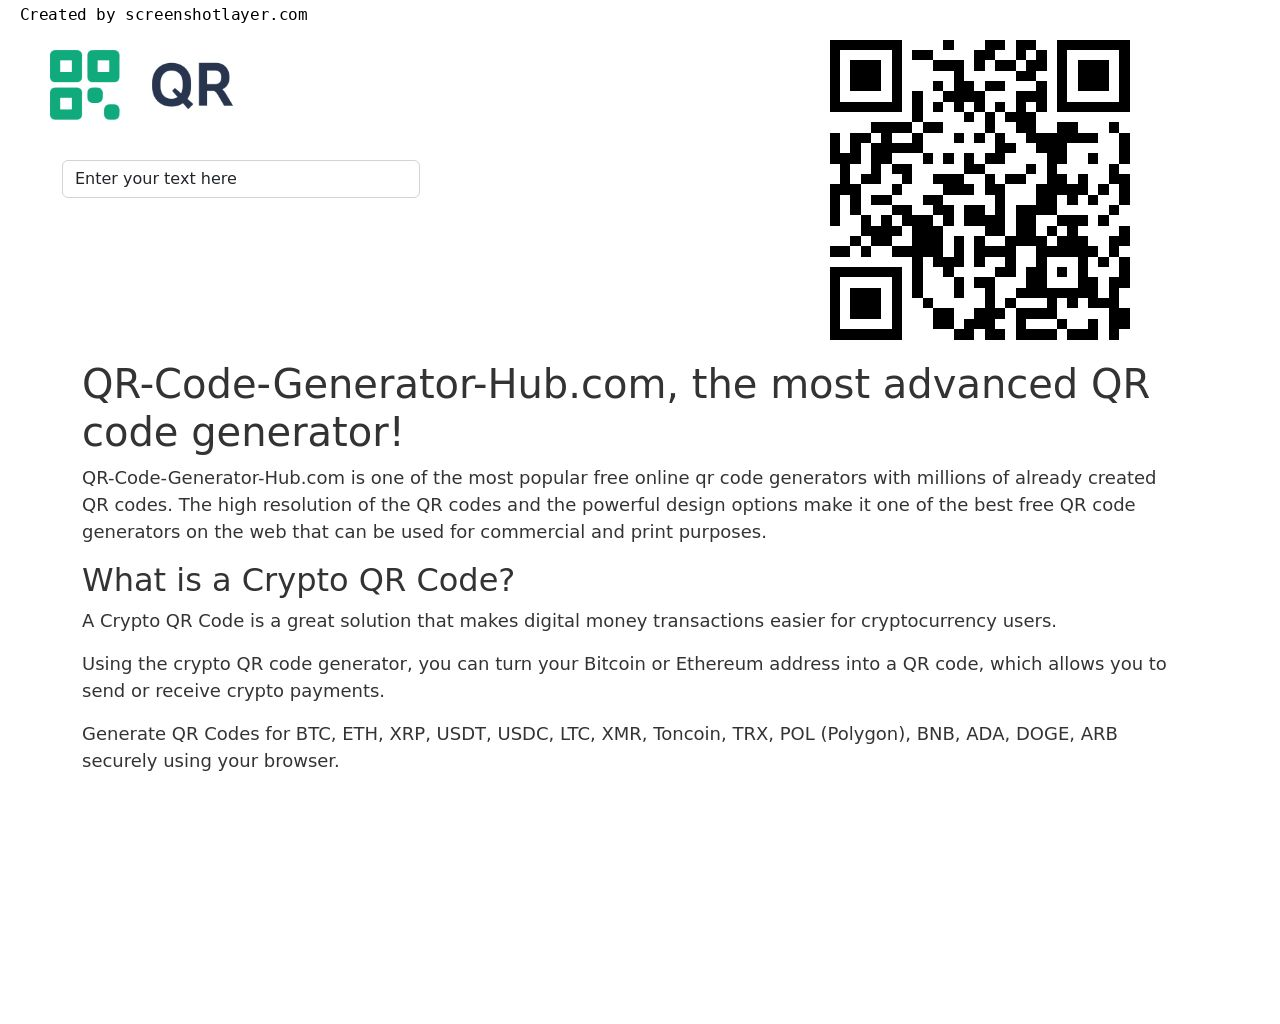 Изображение сайта qr-code-generator-hub.com в разрешении 1280x1024